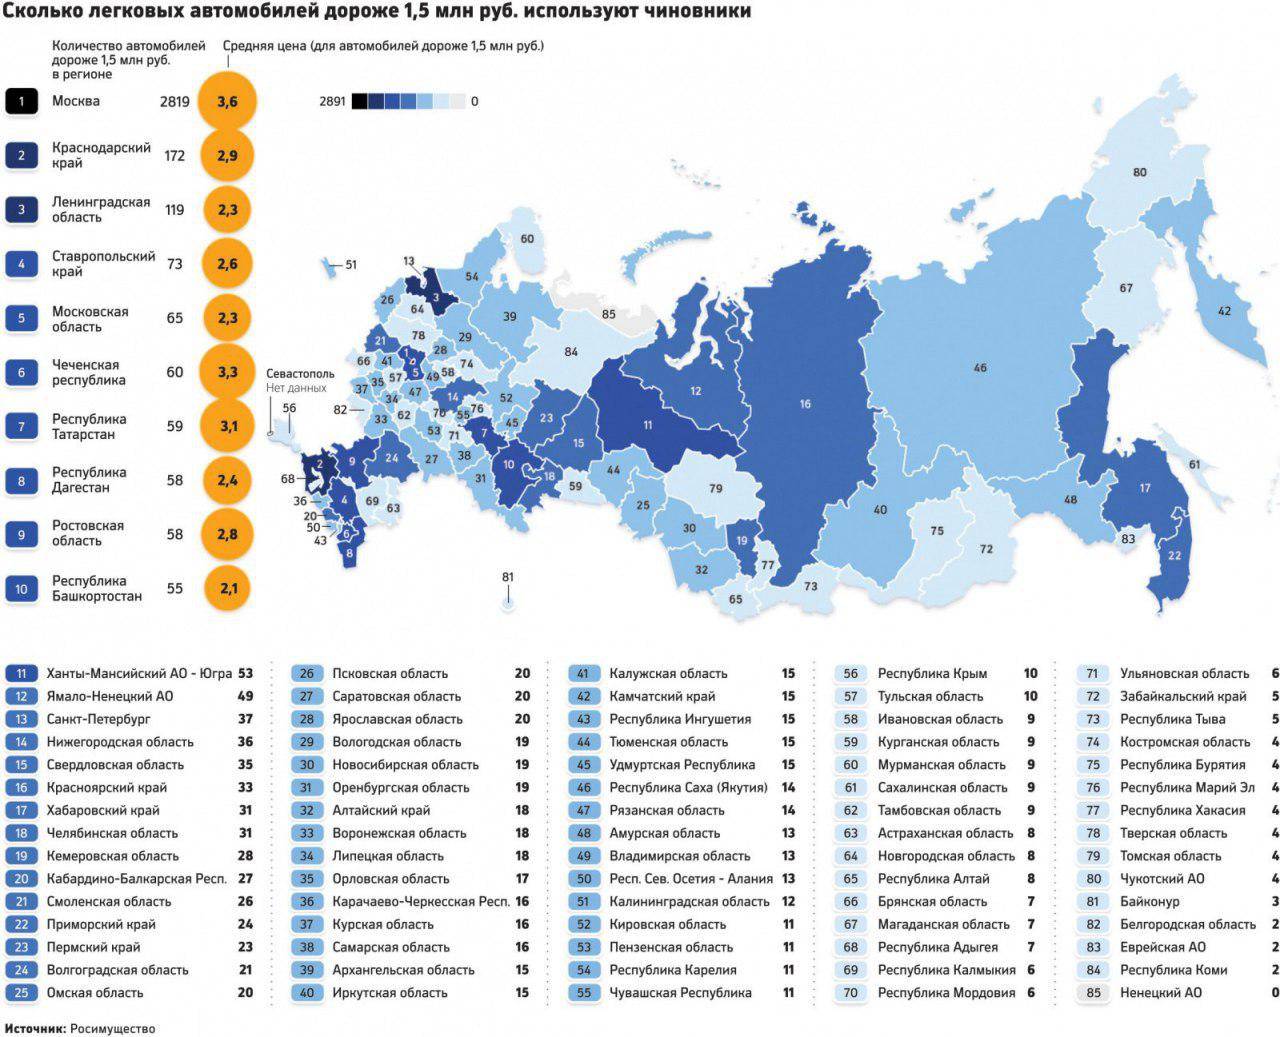 Названы главные хиты российской вторички в разных регионах страны